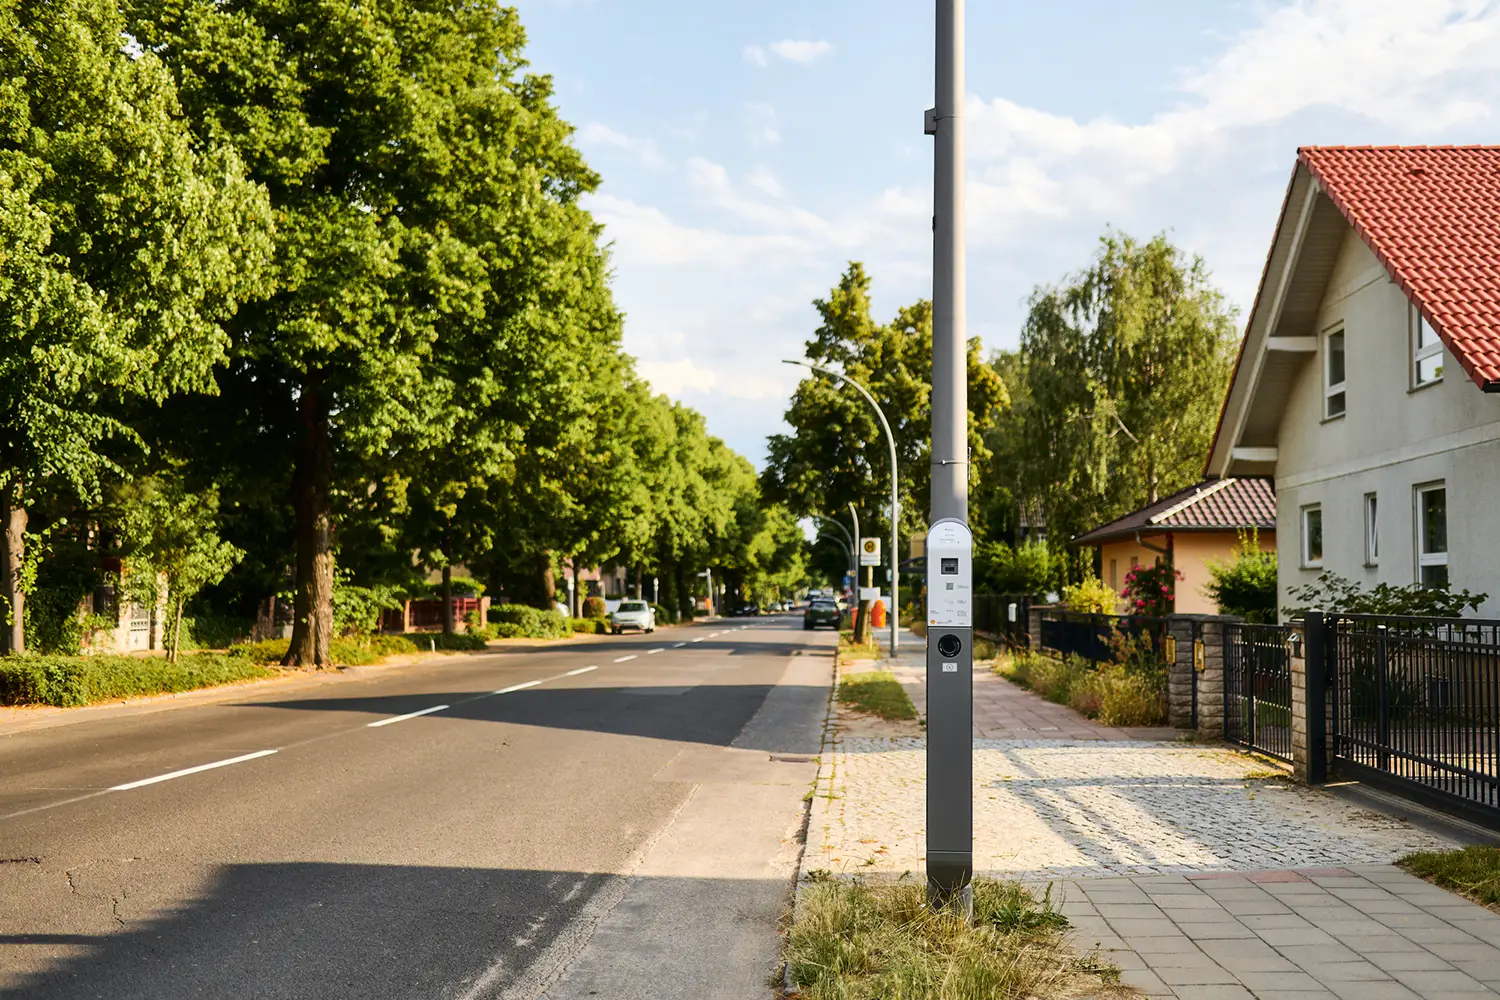 Öffentliche ubitricity AC-Laternenladestation für das Aufladen von E-Autos in einem Wohngebiet Marzahn-Hellersdorf, Berlin, Deutschland